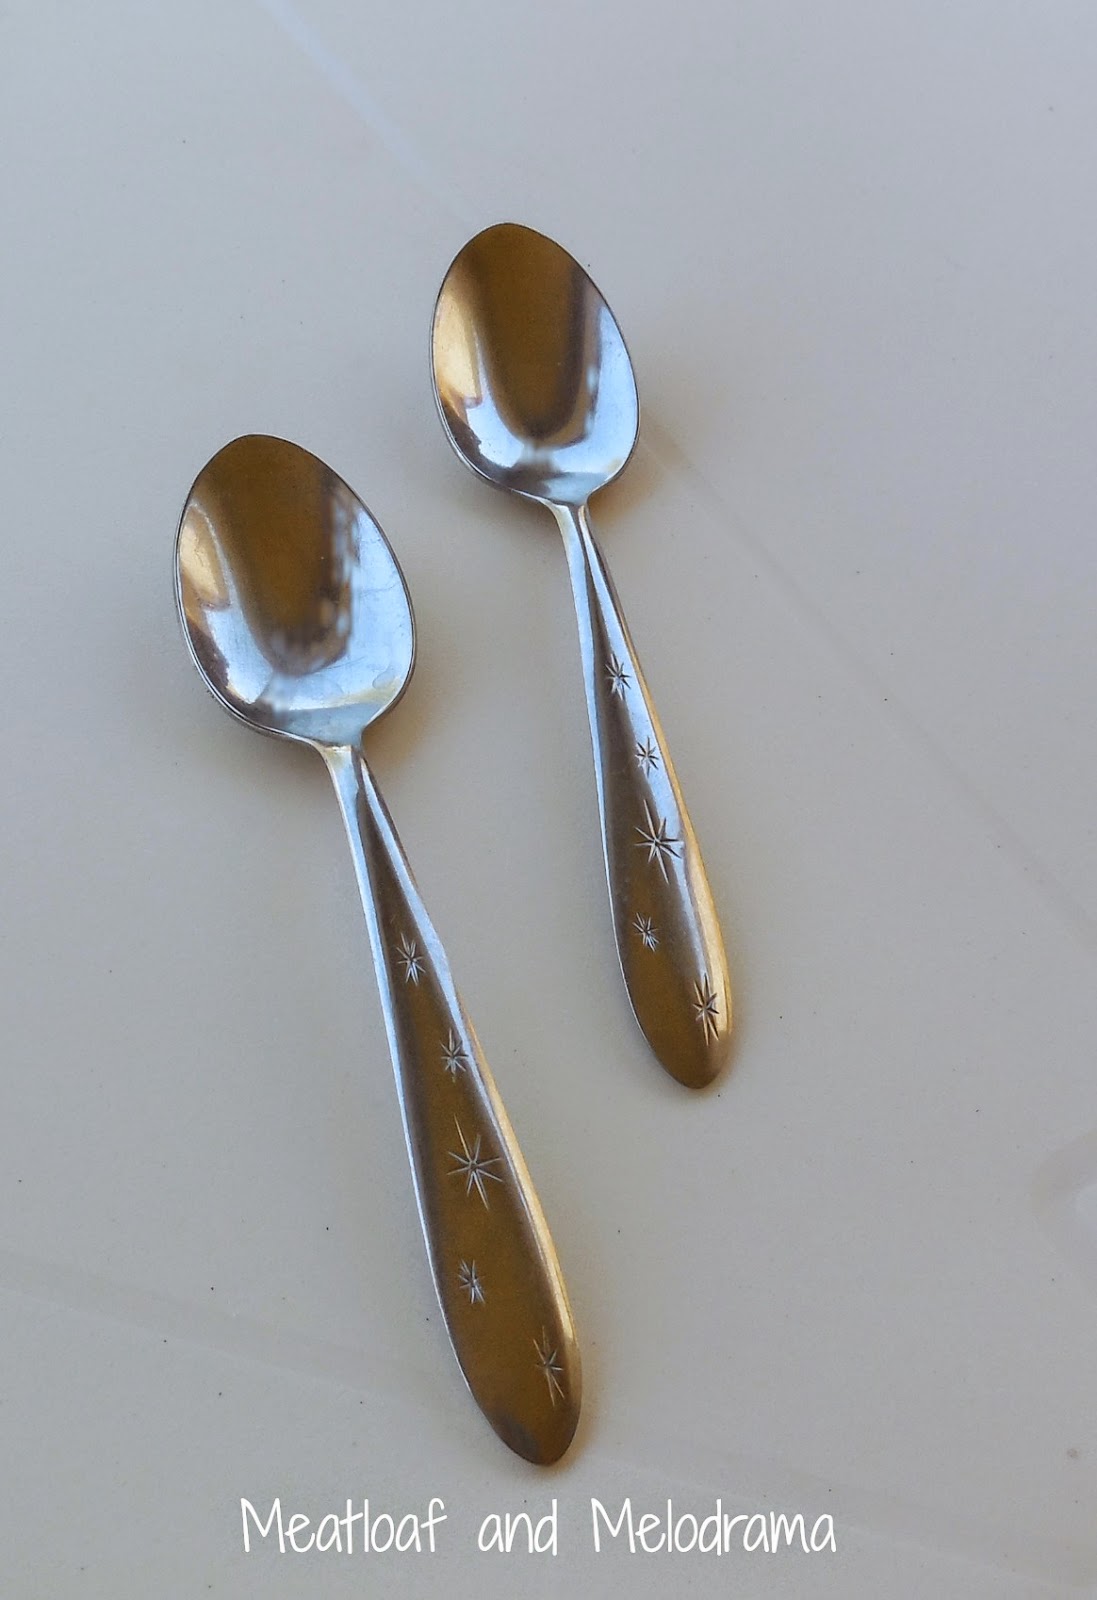 vintage stainless steel spoons starburst pattern